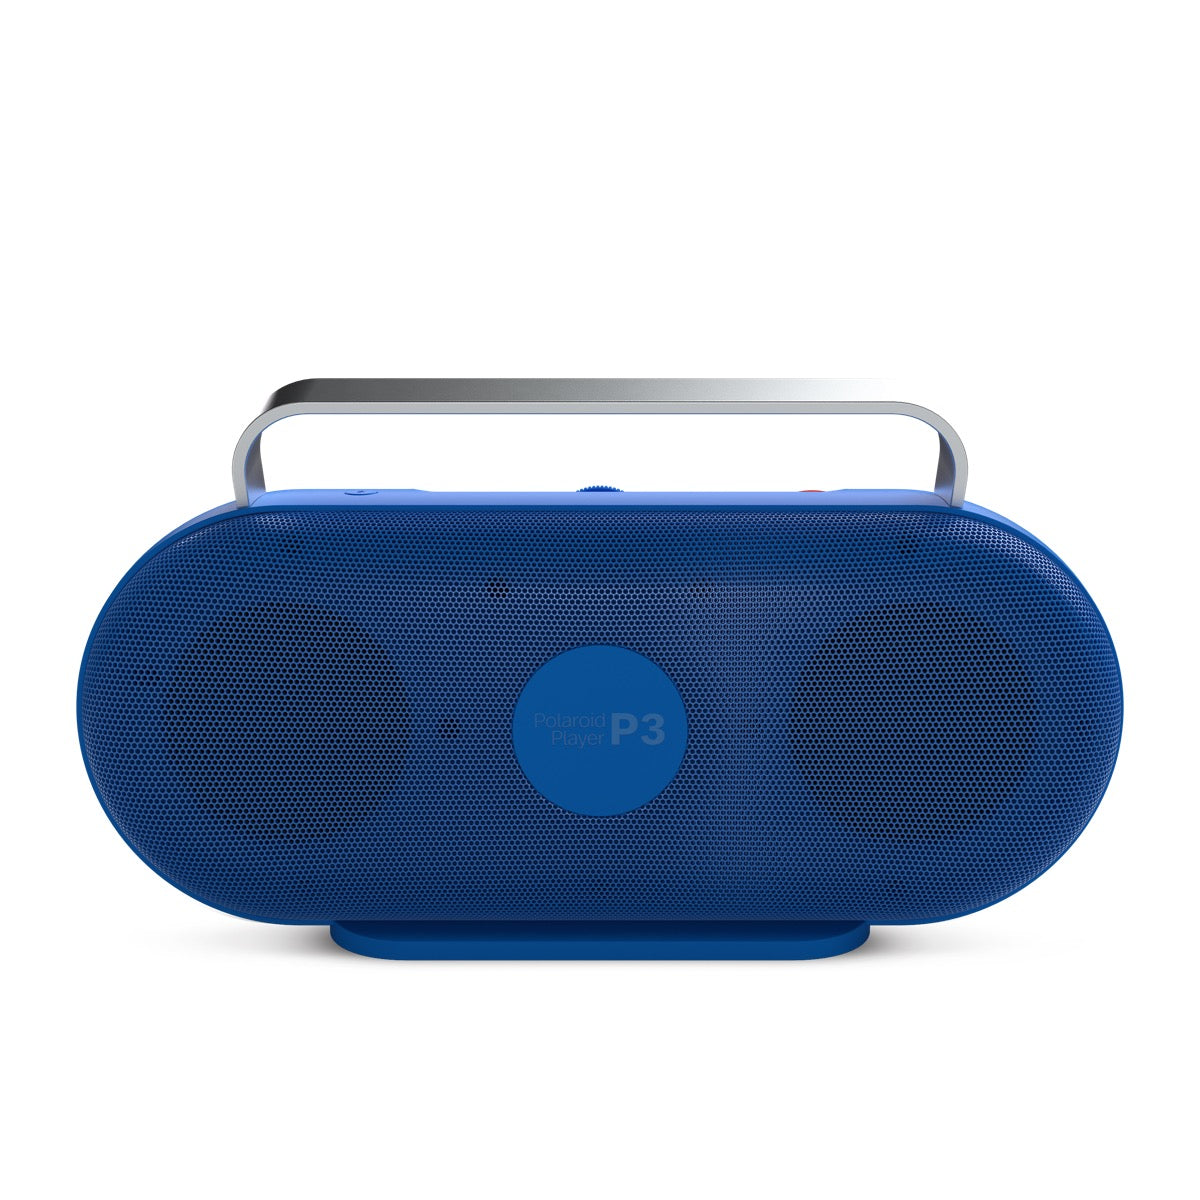 Polaroid Player P3 - Bleu